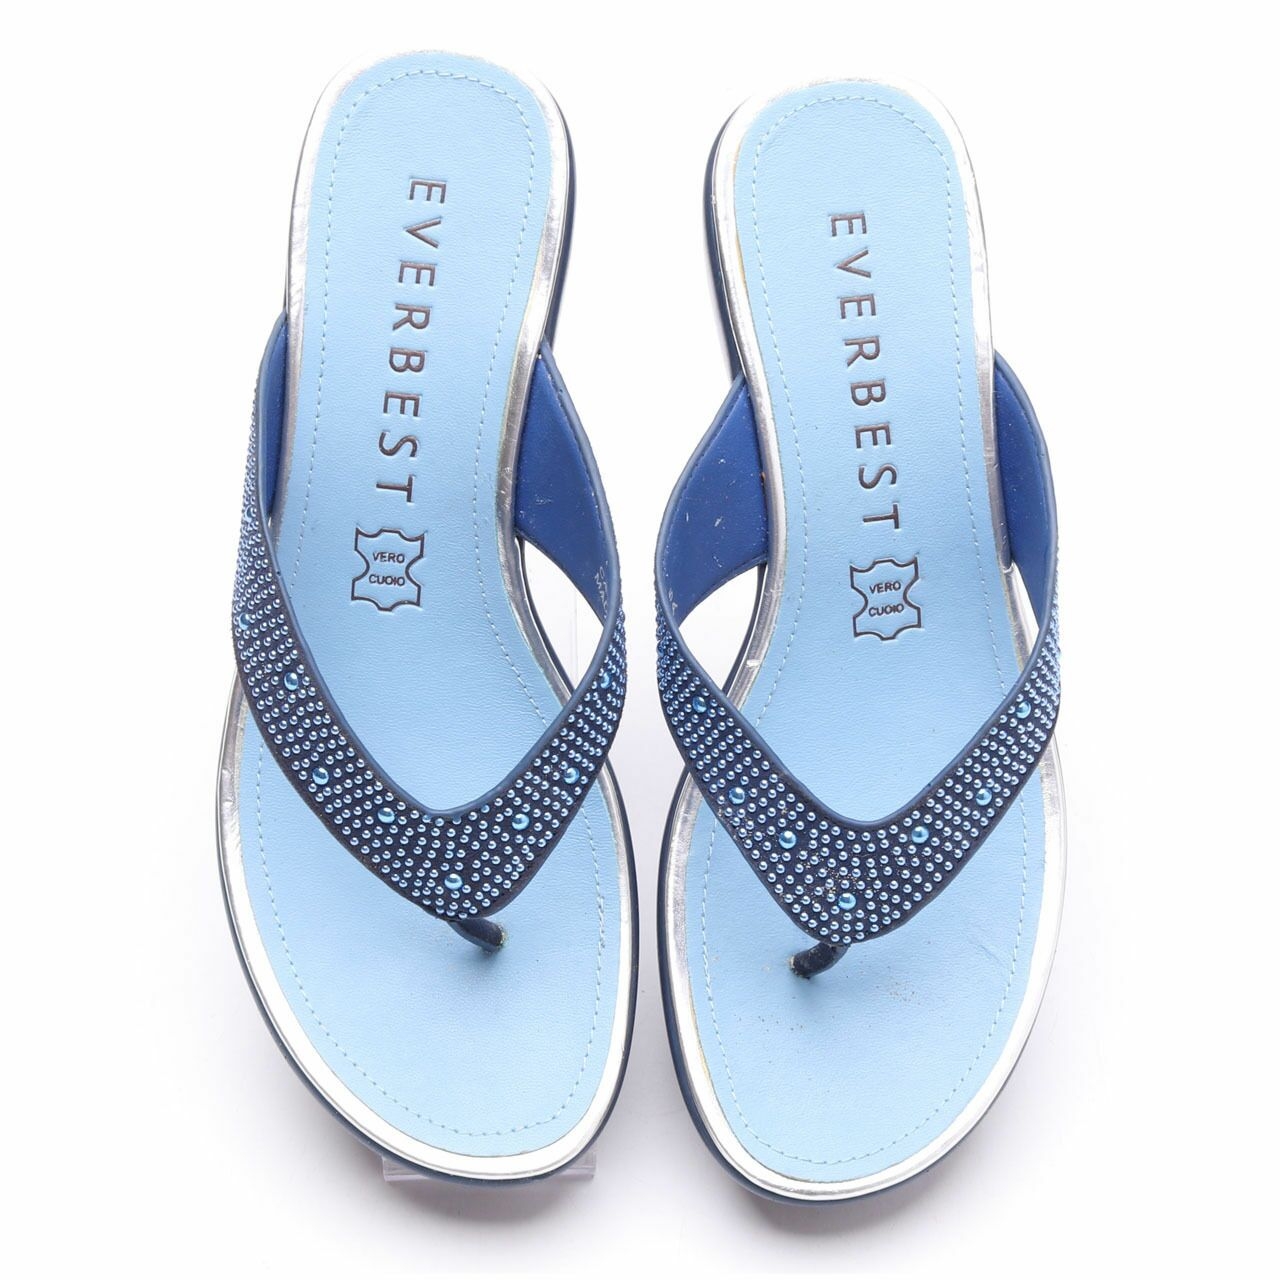 Everbest Blue Sandals